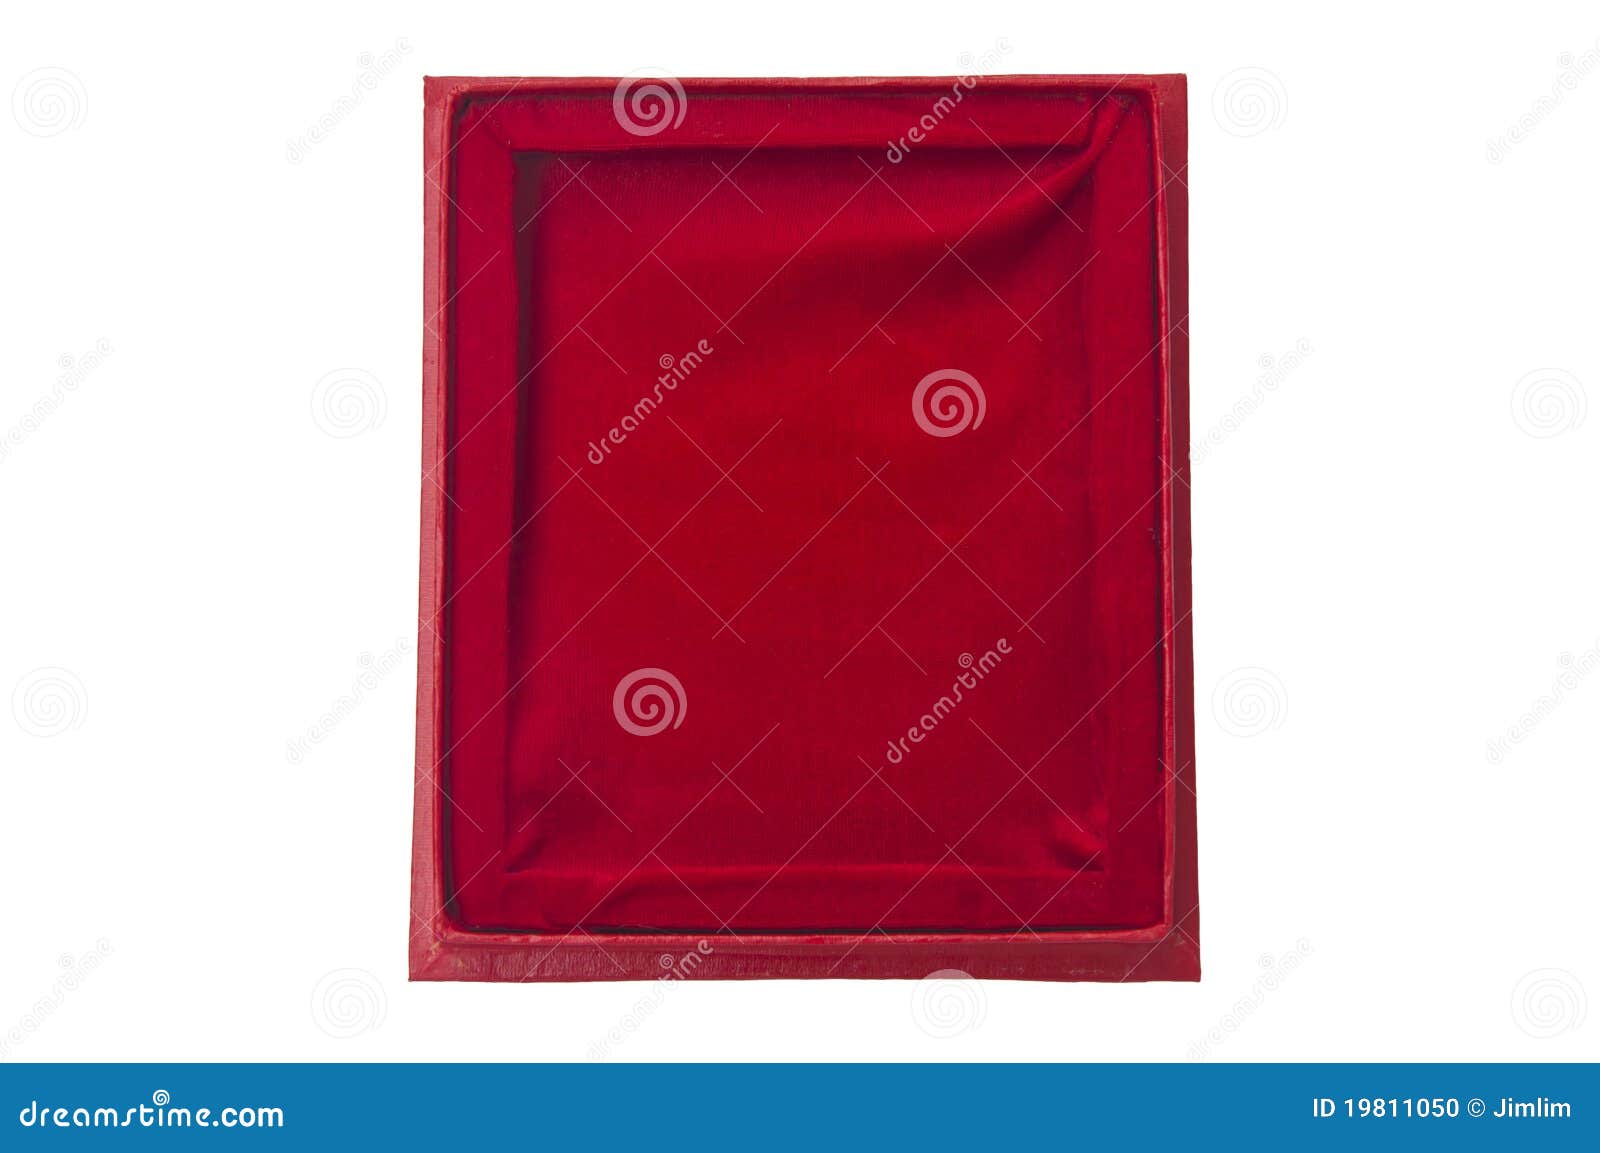 Henstilling Kollektive tuberkulose Red velvet frame stock photo. Image of border, curtain - 19811050